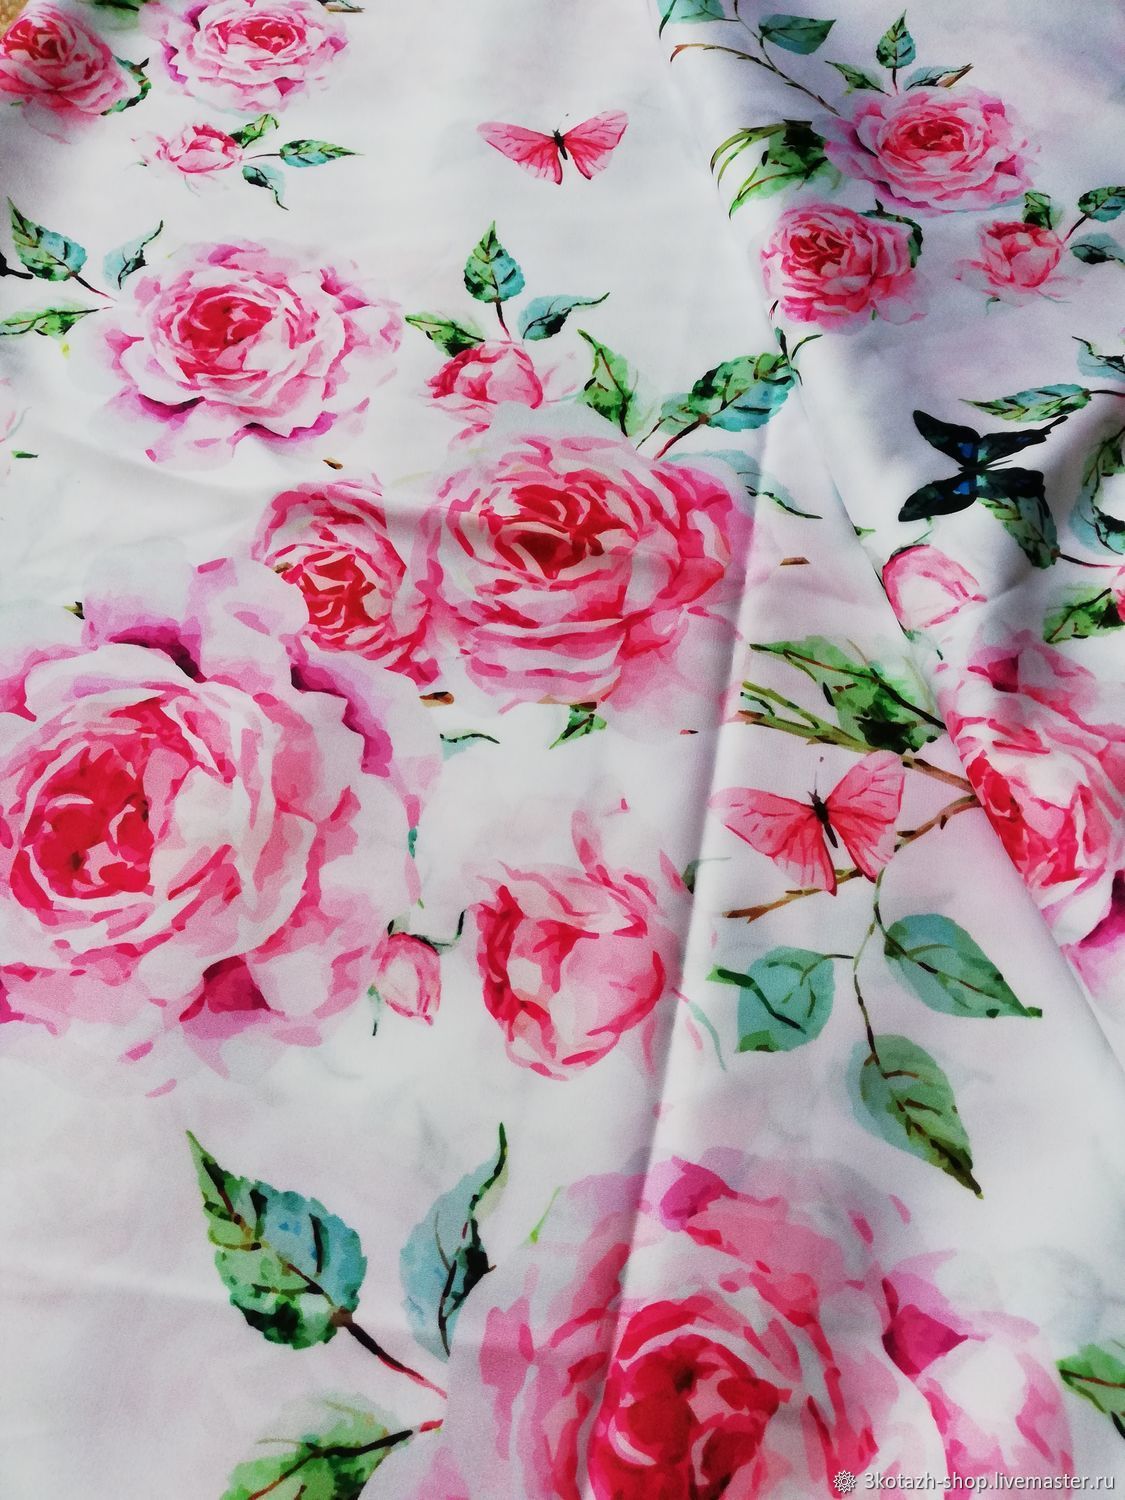 Купить материал розы. Ткань в розочку. Ткань с розами. Ткань с крупными розами. Ткань принт розы.